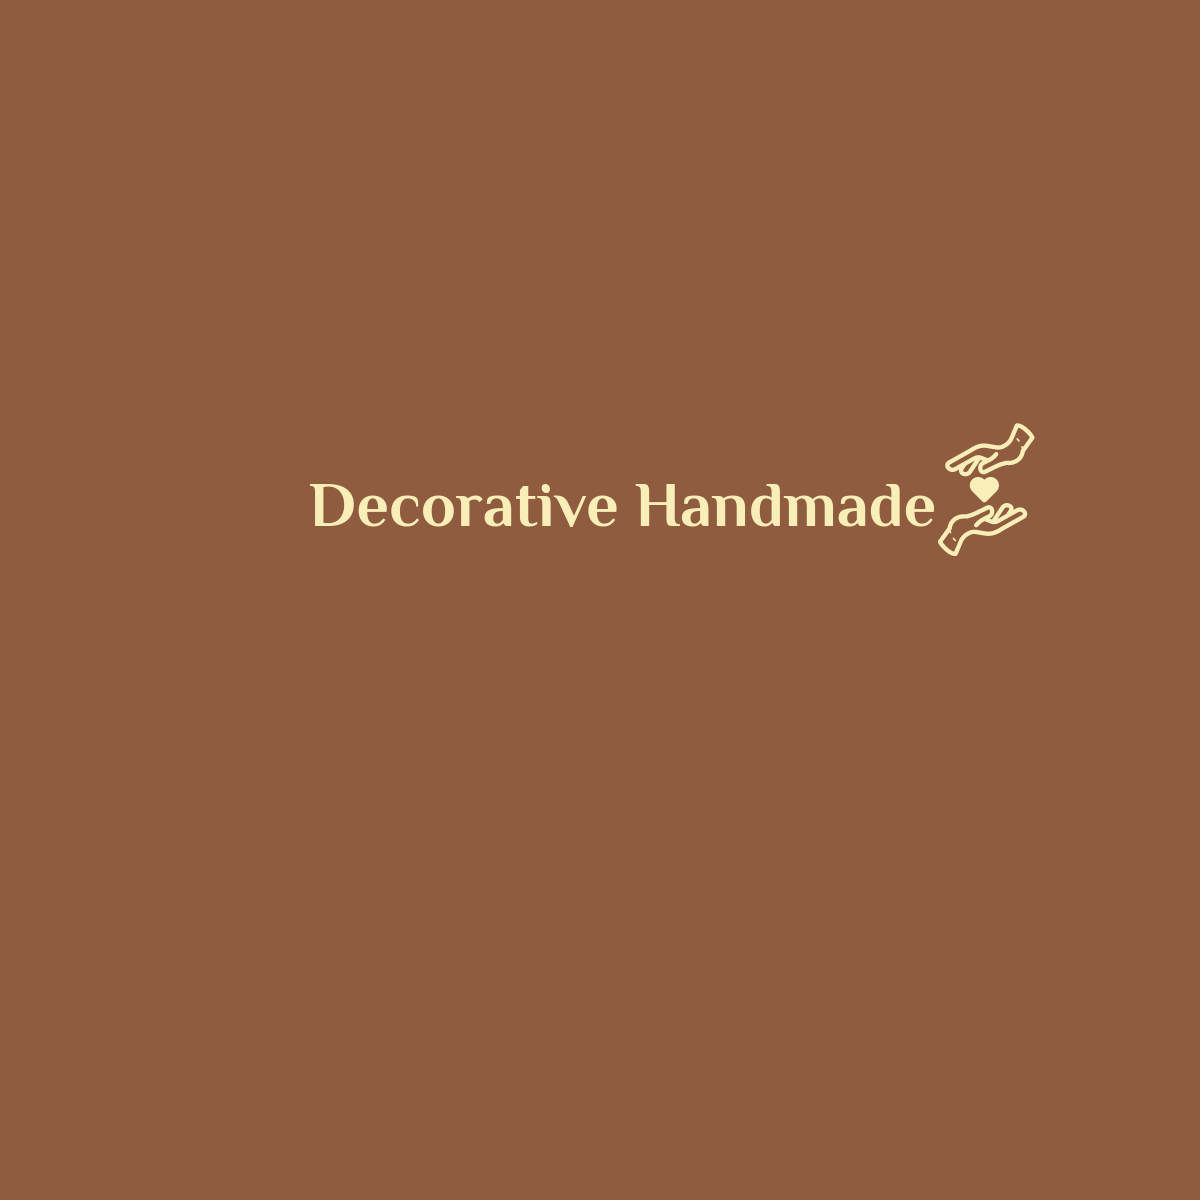 Decorative Handmade